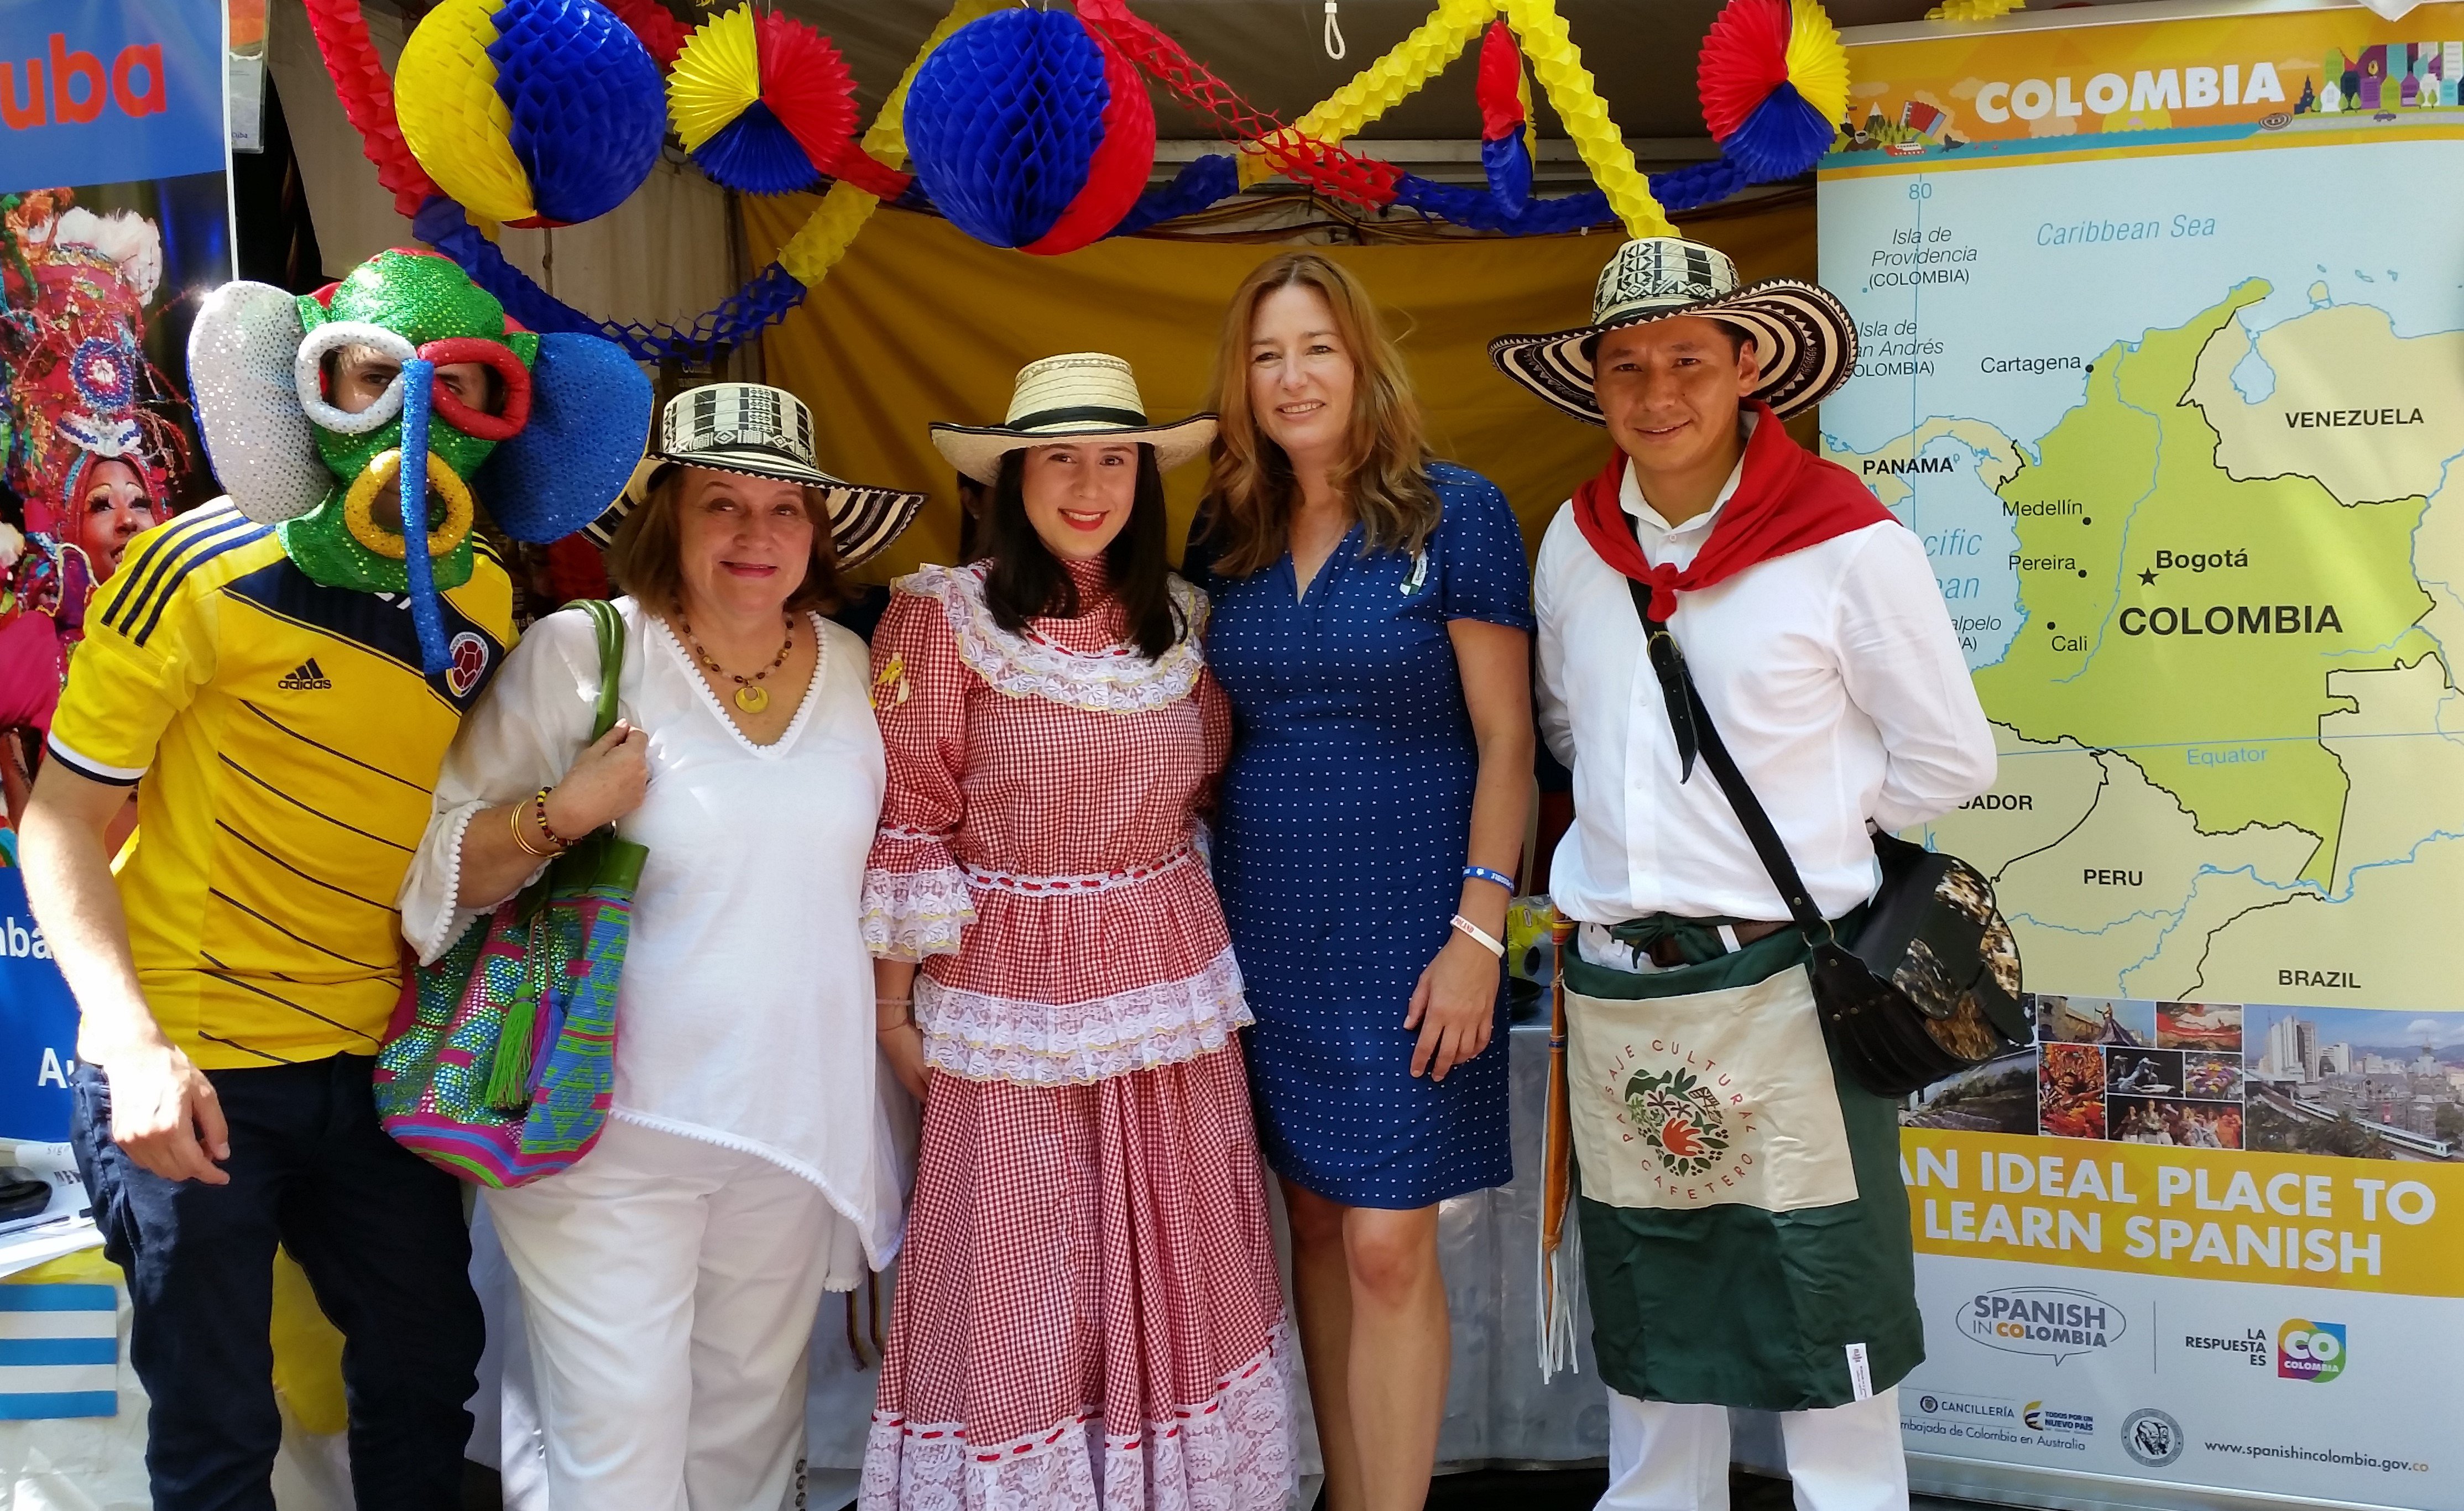 La Embajada de Colombia en Australia participó en el Festival Multicultural con la promoción del español como segunda lengua 